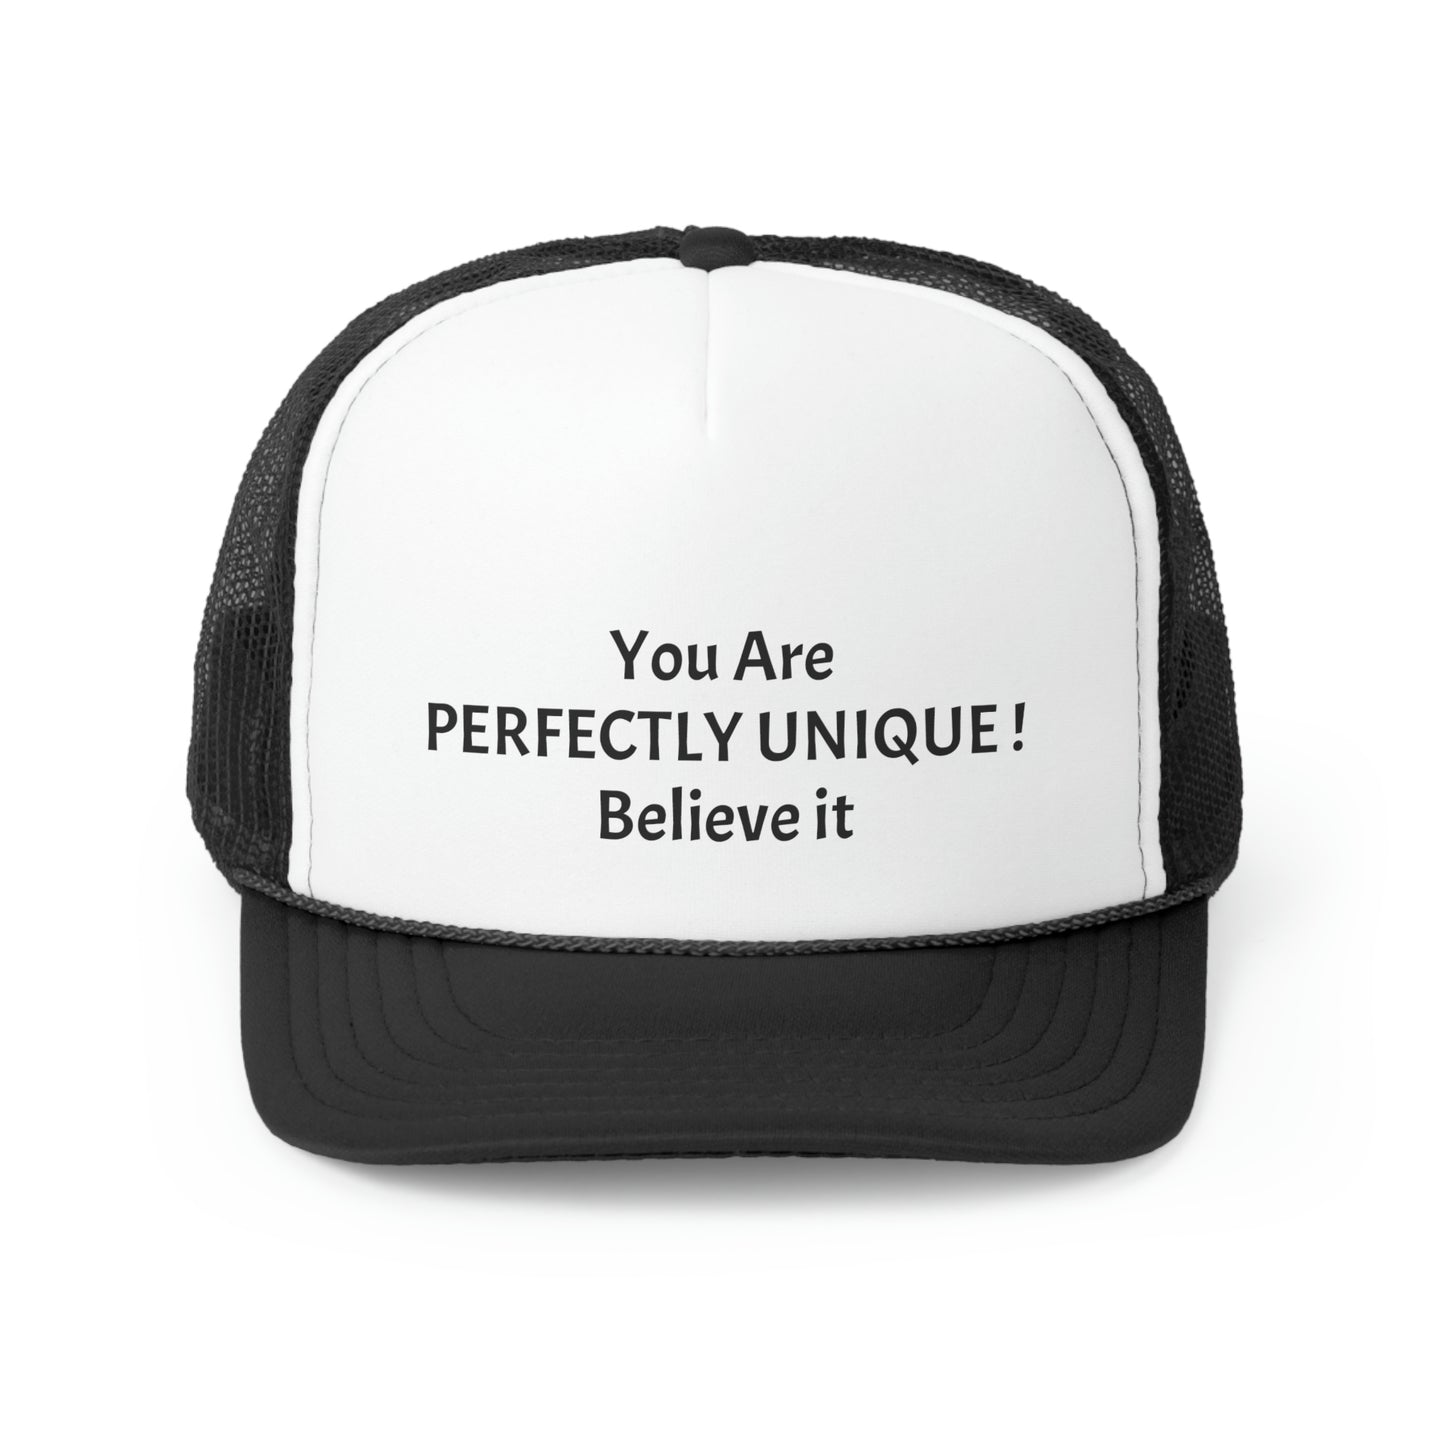 You Are Perfect Unique! Trucker Caps